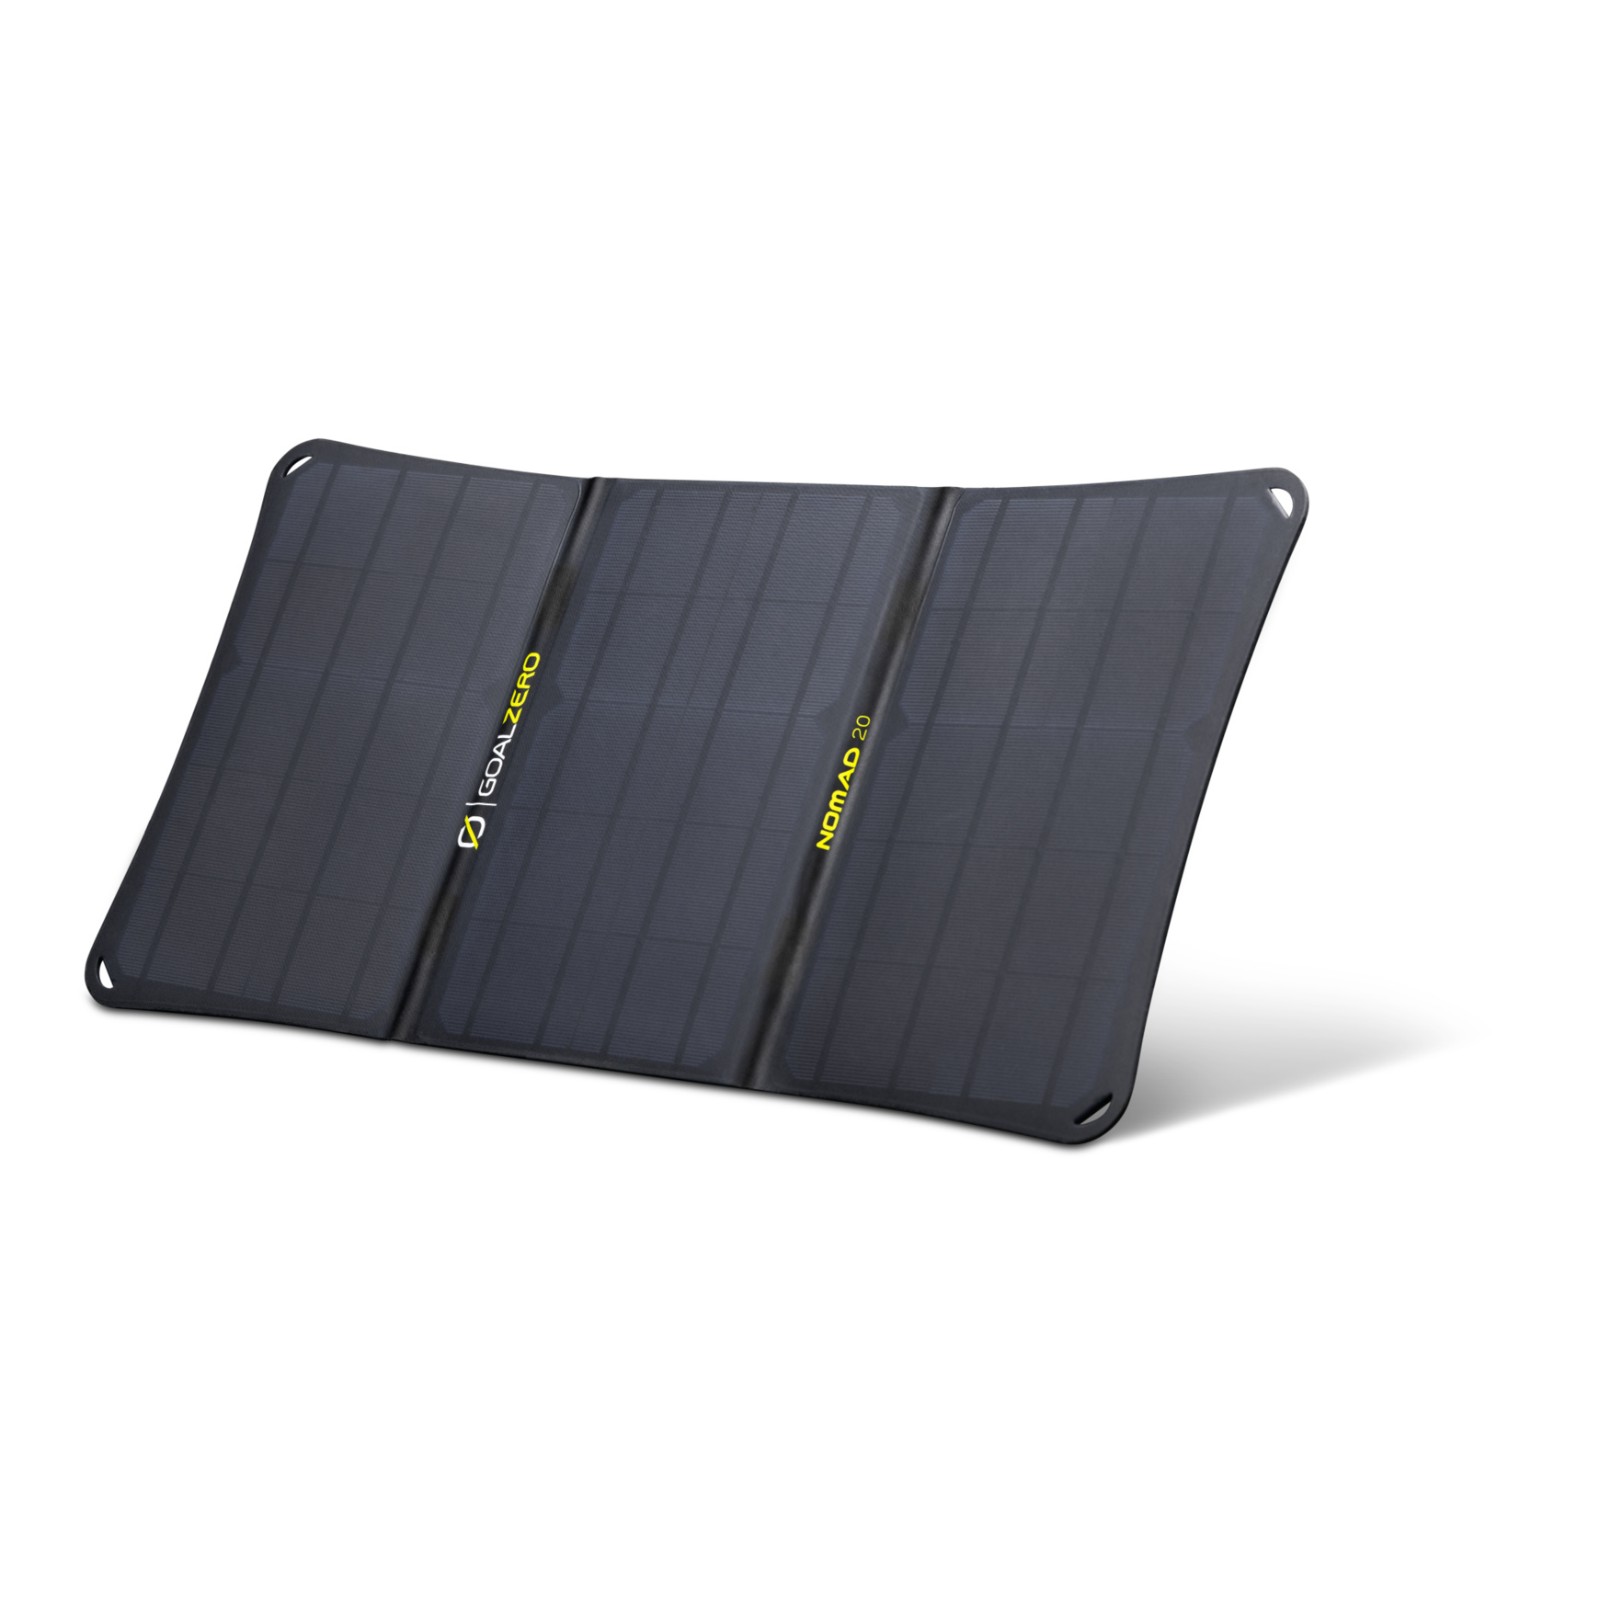 Lampe solaire portable Nomad Solar - La Boutique Desjoyaux